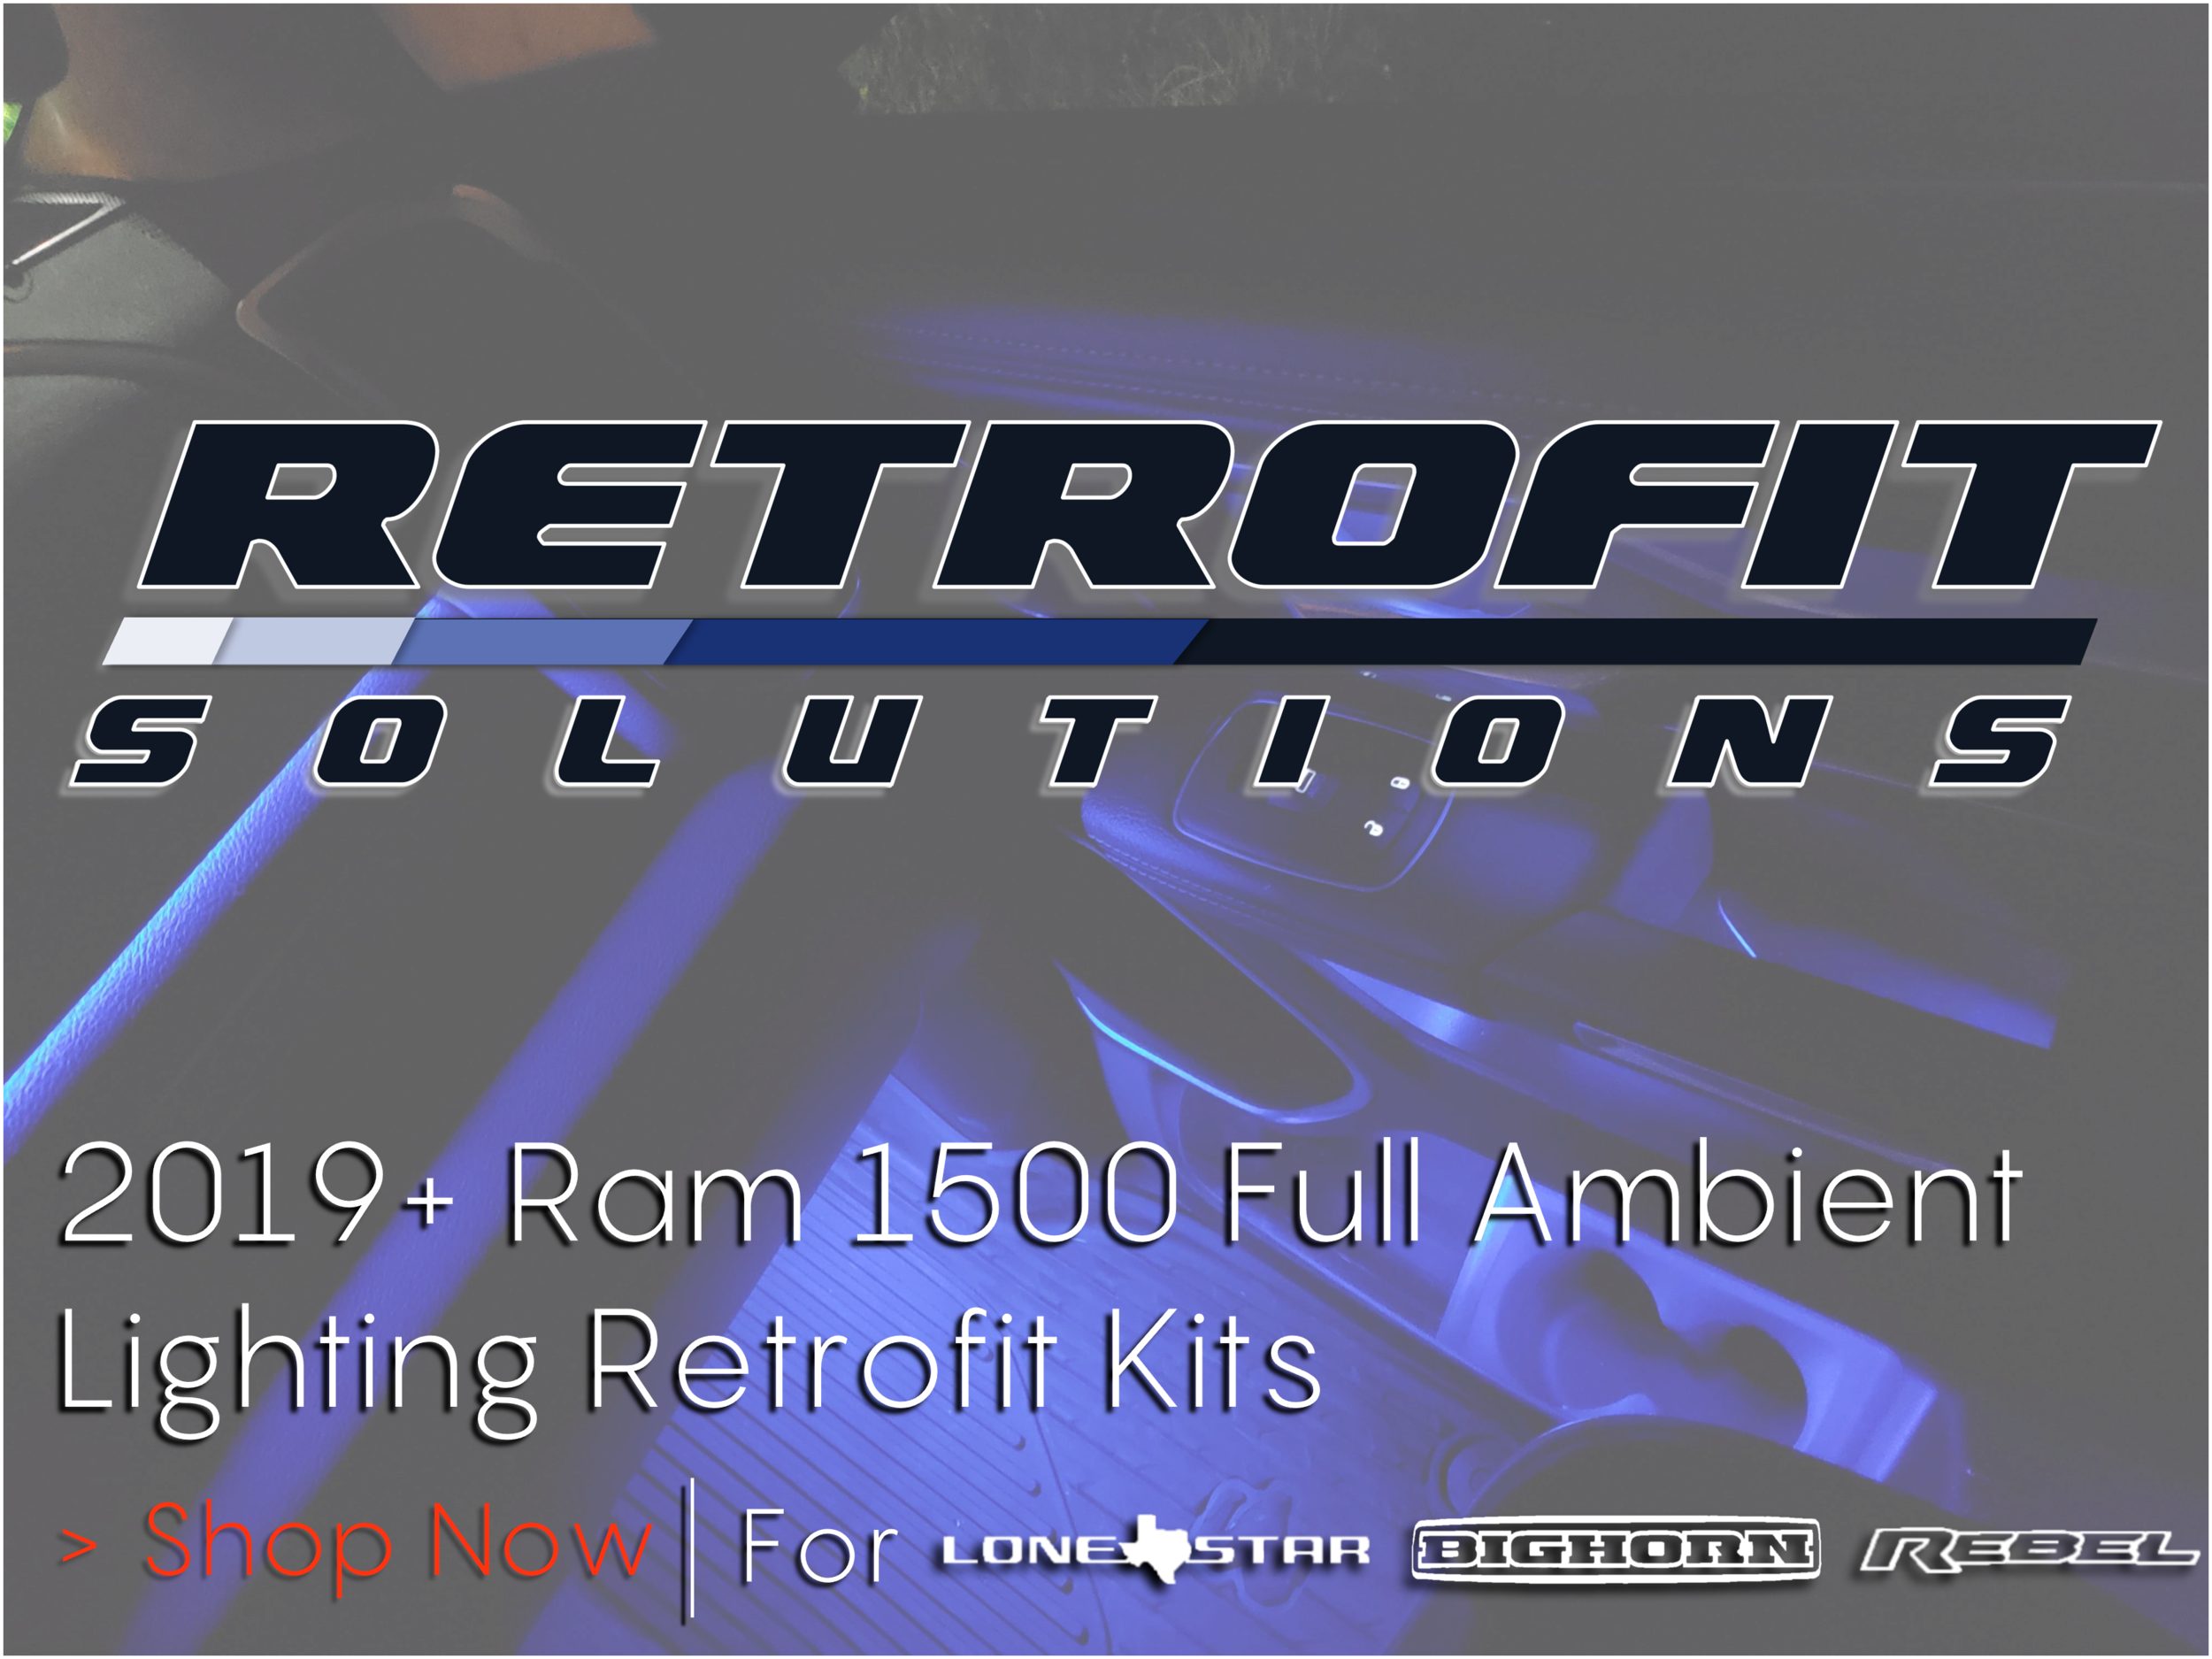 DT RetroFit Kit Banner.png